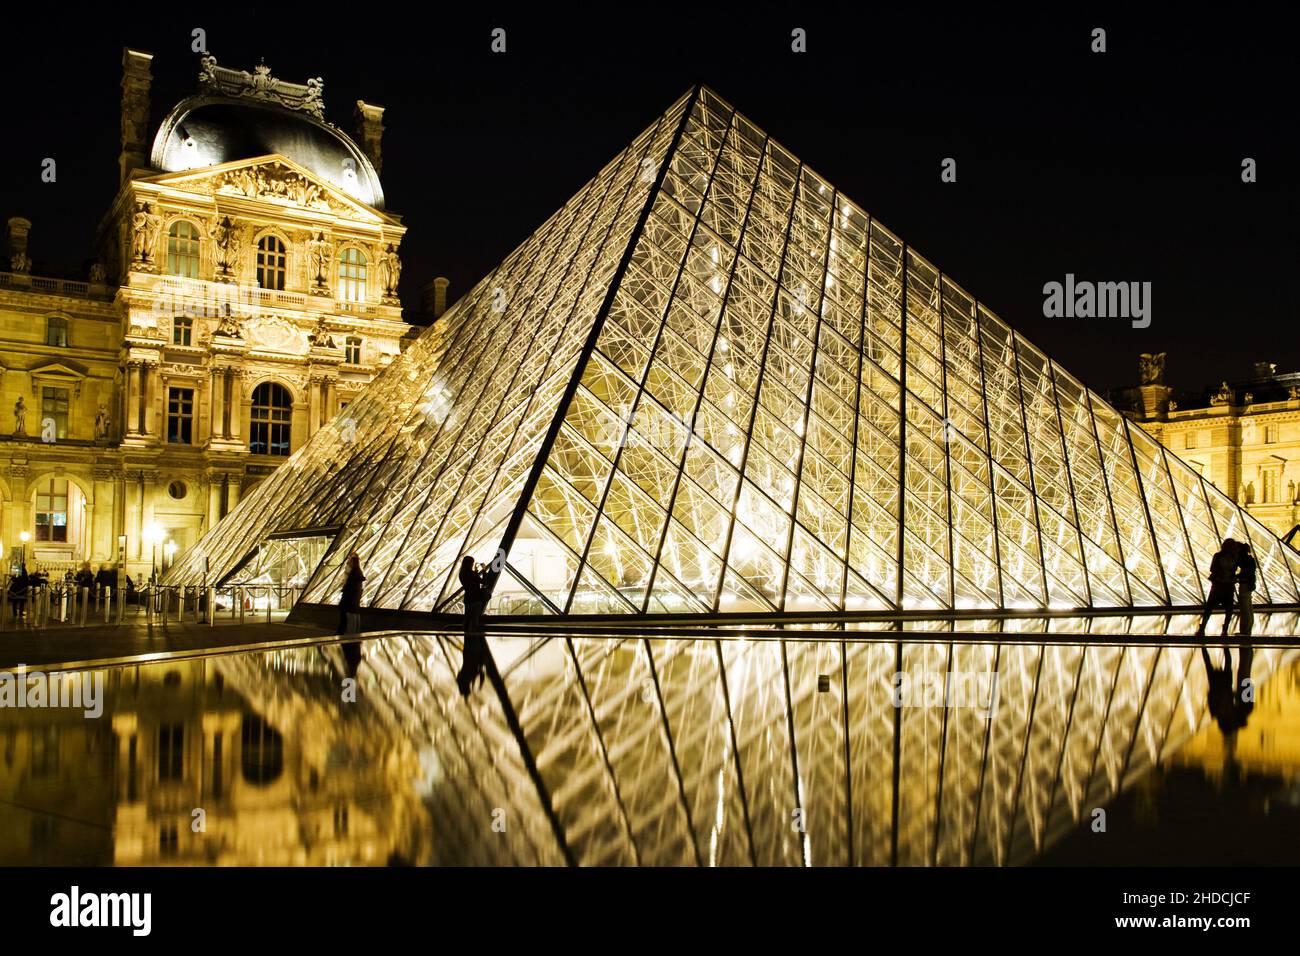 Palais du Louvre bei Nacht, Frankreich, Paris Stock Photo